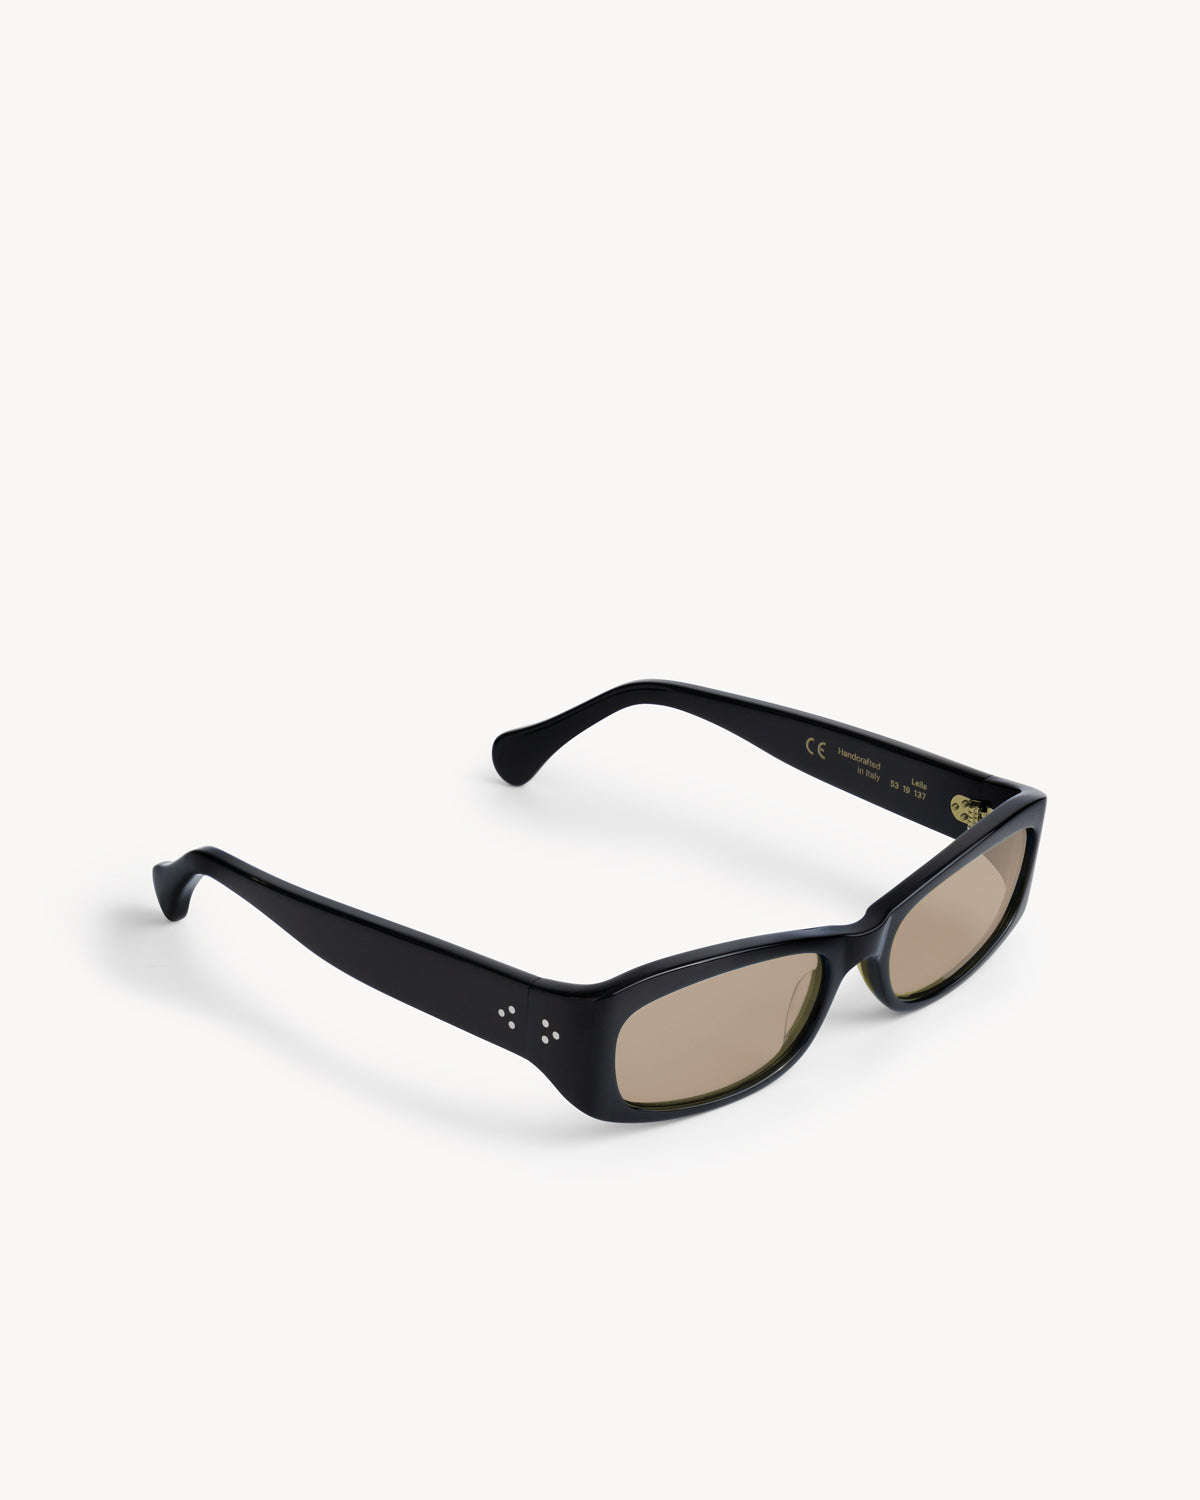 Port Tanger Leila Sunglasses in Black Acetate and Amber Lenses 2